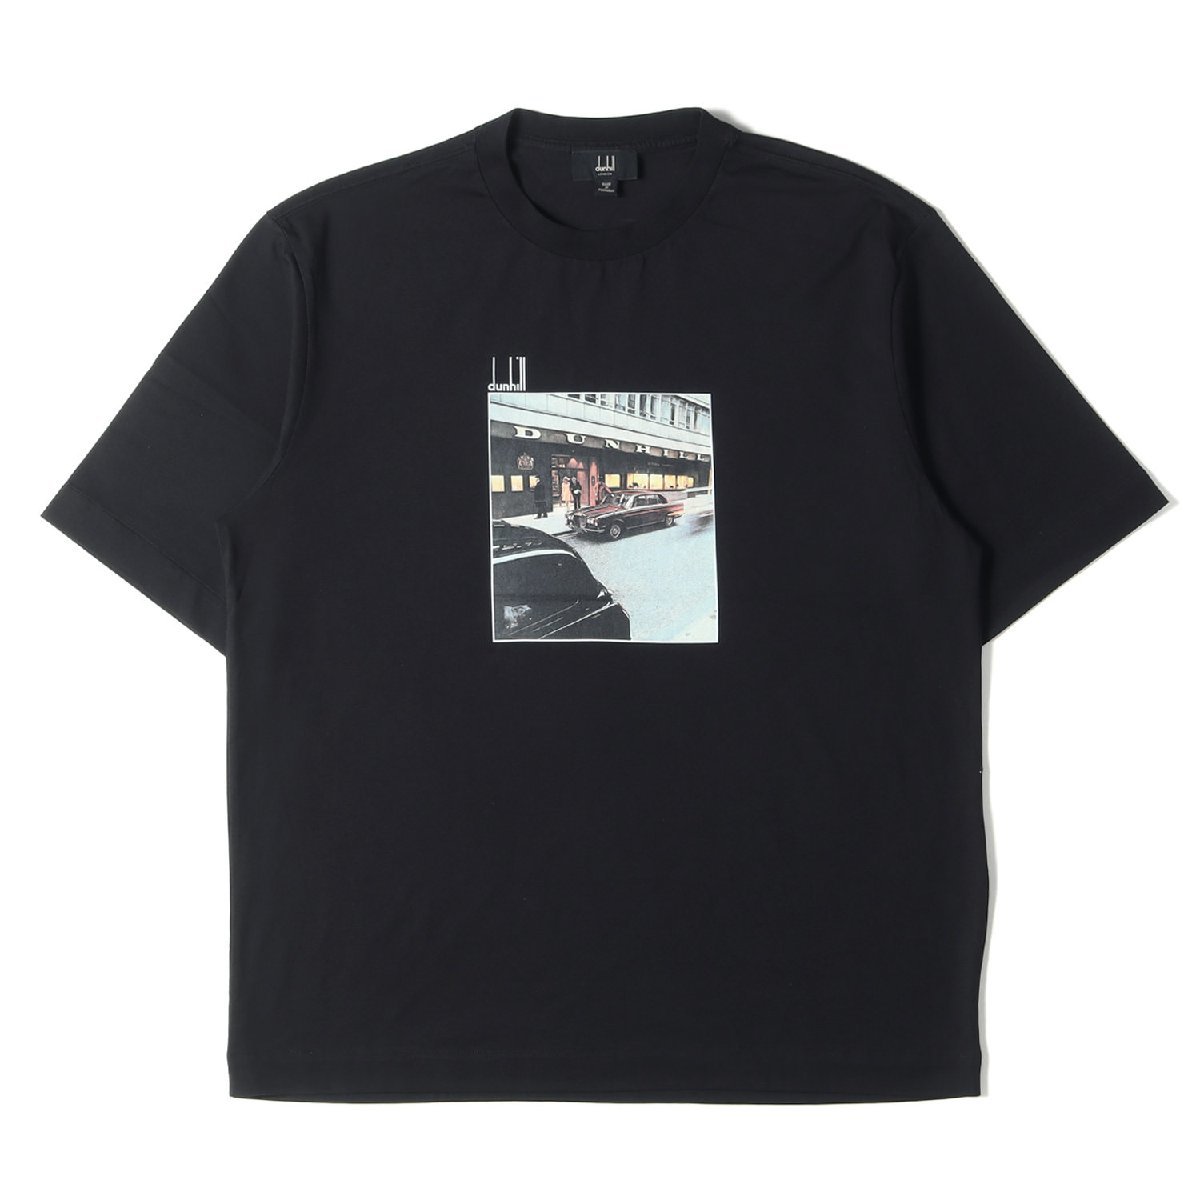 2022年ファッション福袋 プリント グラフィック フォト ロゴ サイズ:M Tシャツ ダンヒル dunhill クルーネック トップス ブラック 近年モデル Tシャツ 半袖 その他